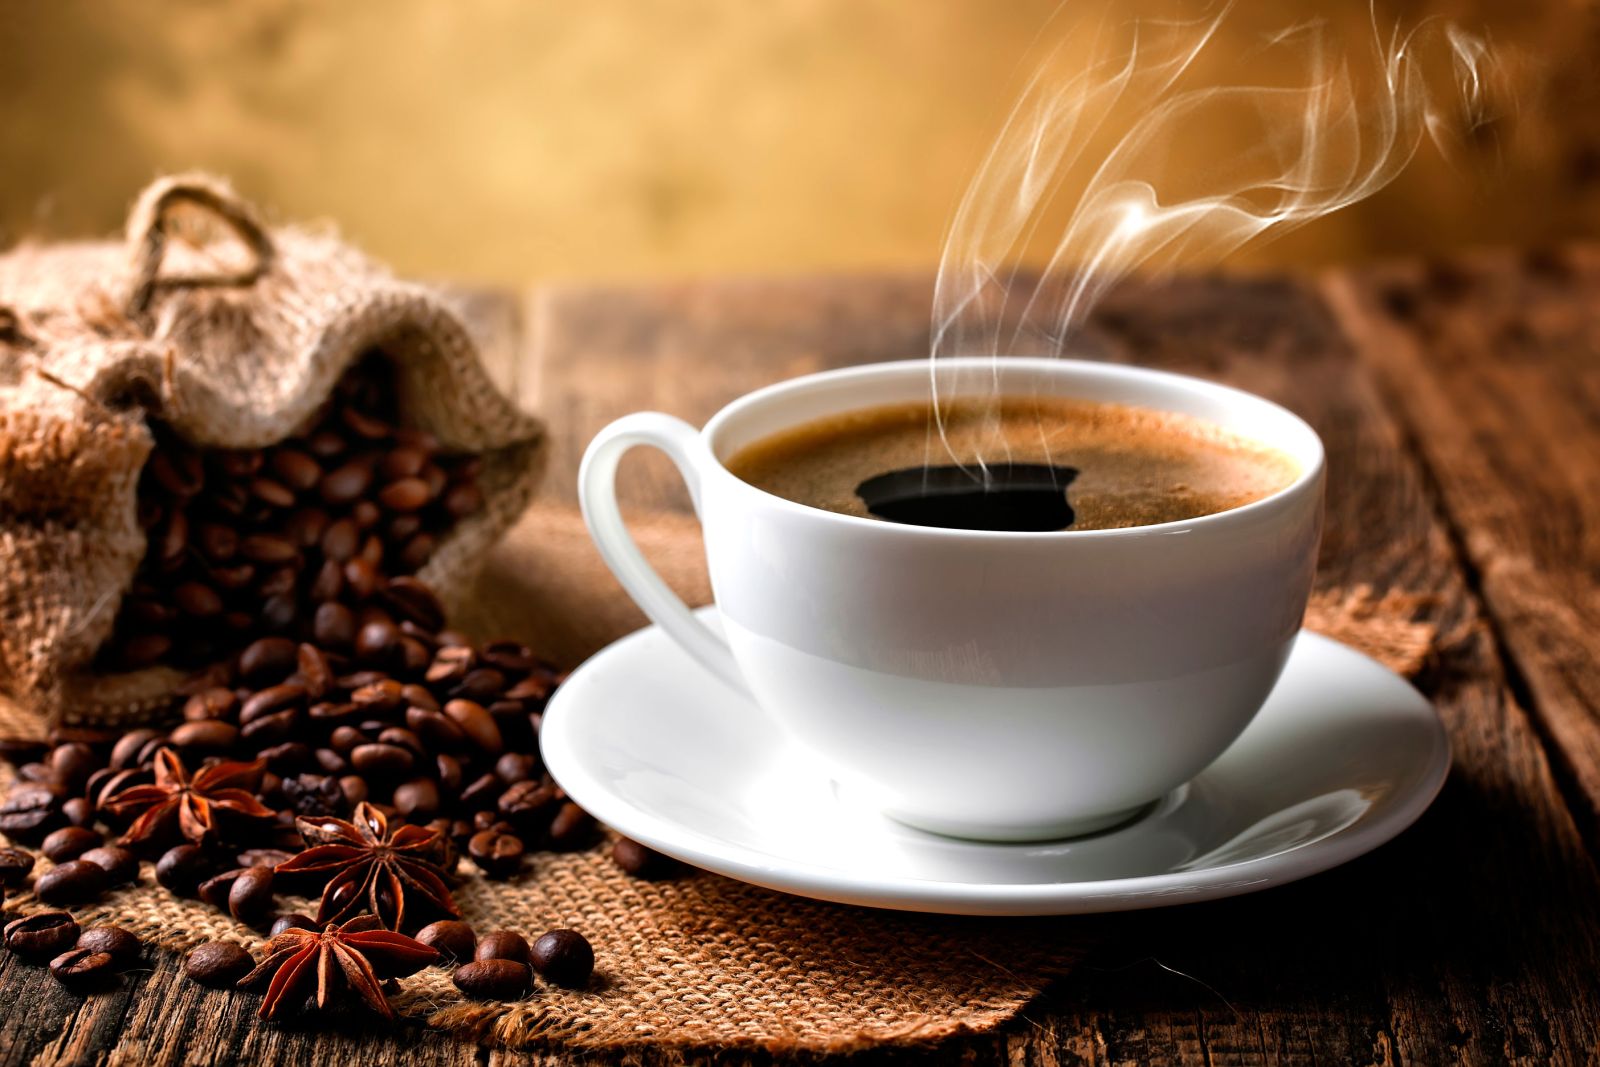 Cà phê có thể kiểm soát cân nặng lâu dài nhờ đốt cháy chất béo trong cơ thể